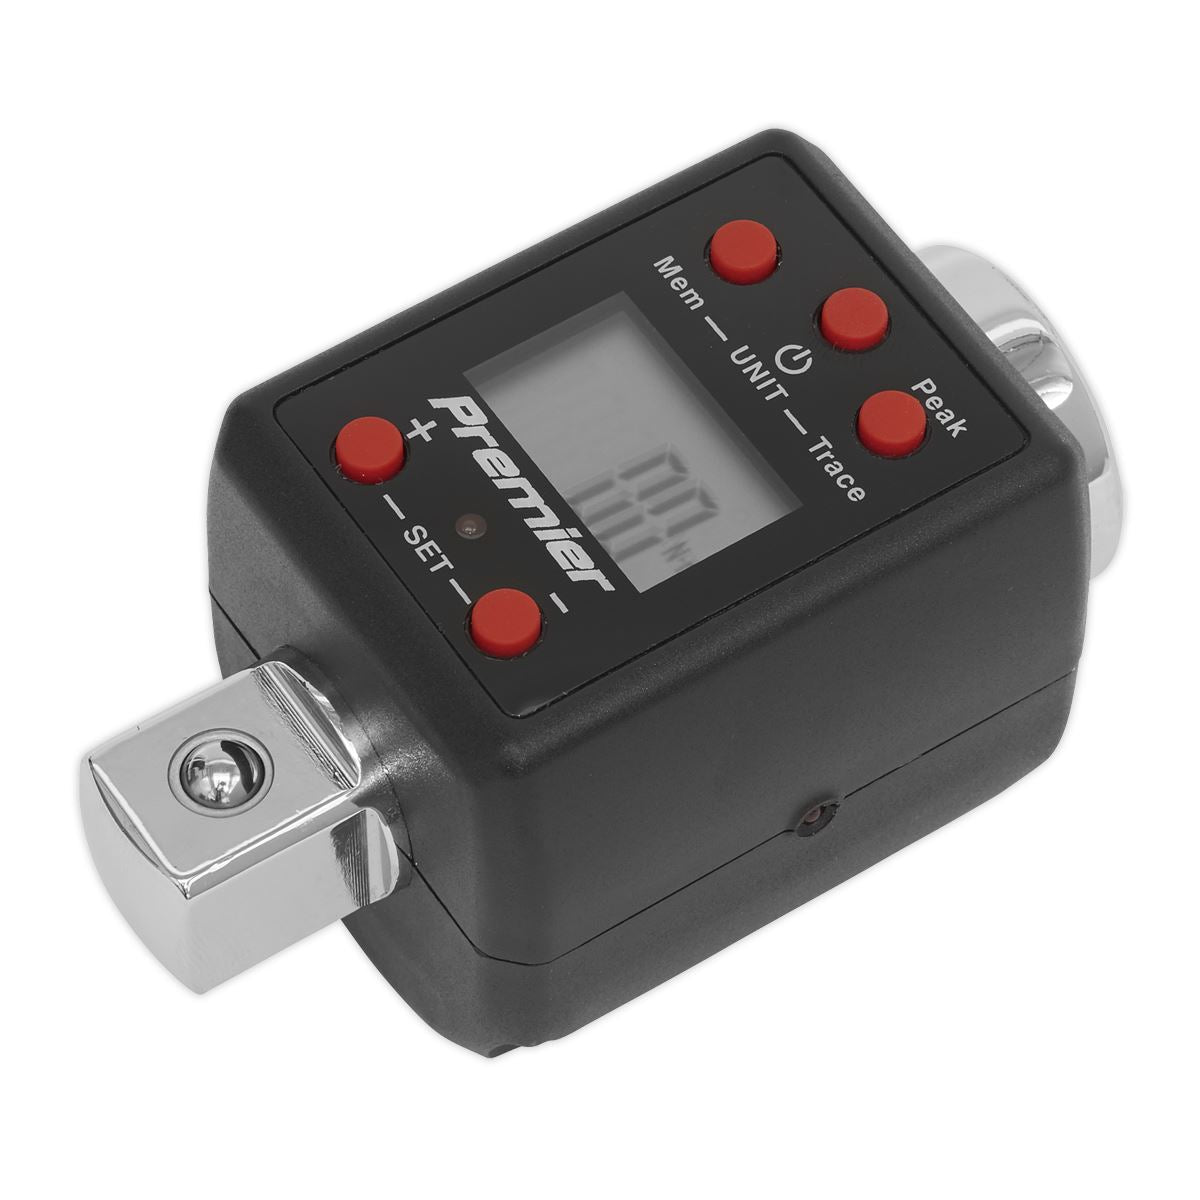 Sealey Premier Torque Adaptor Digital 3/4"Sq Drive 200-1000Nm(147.5-738.5lb.ft)